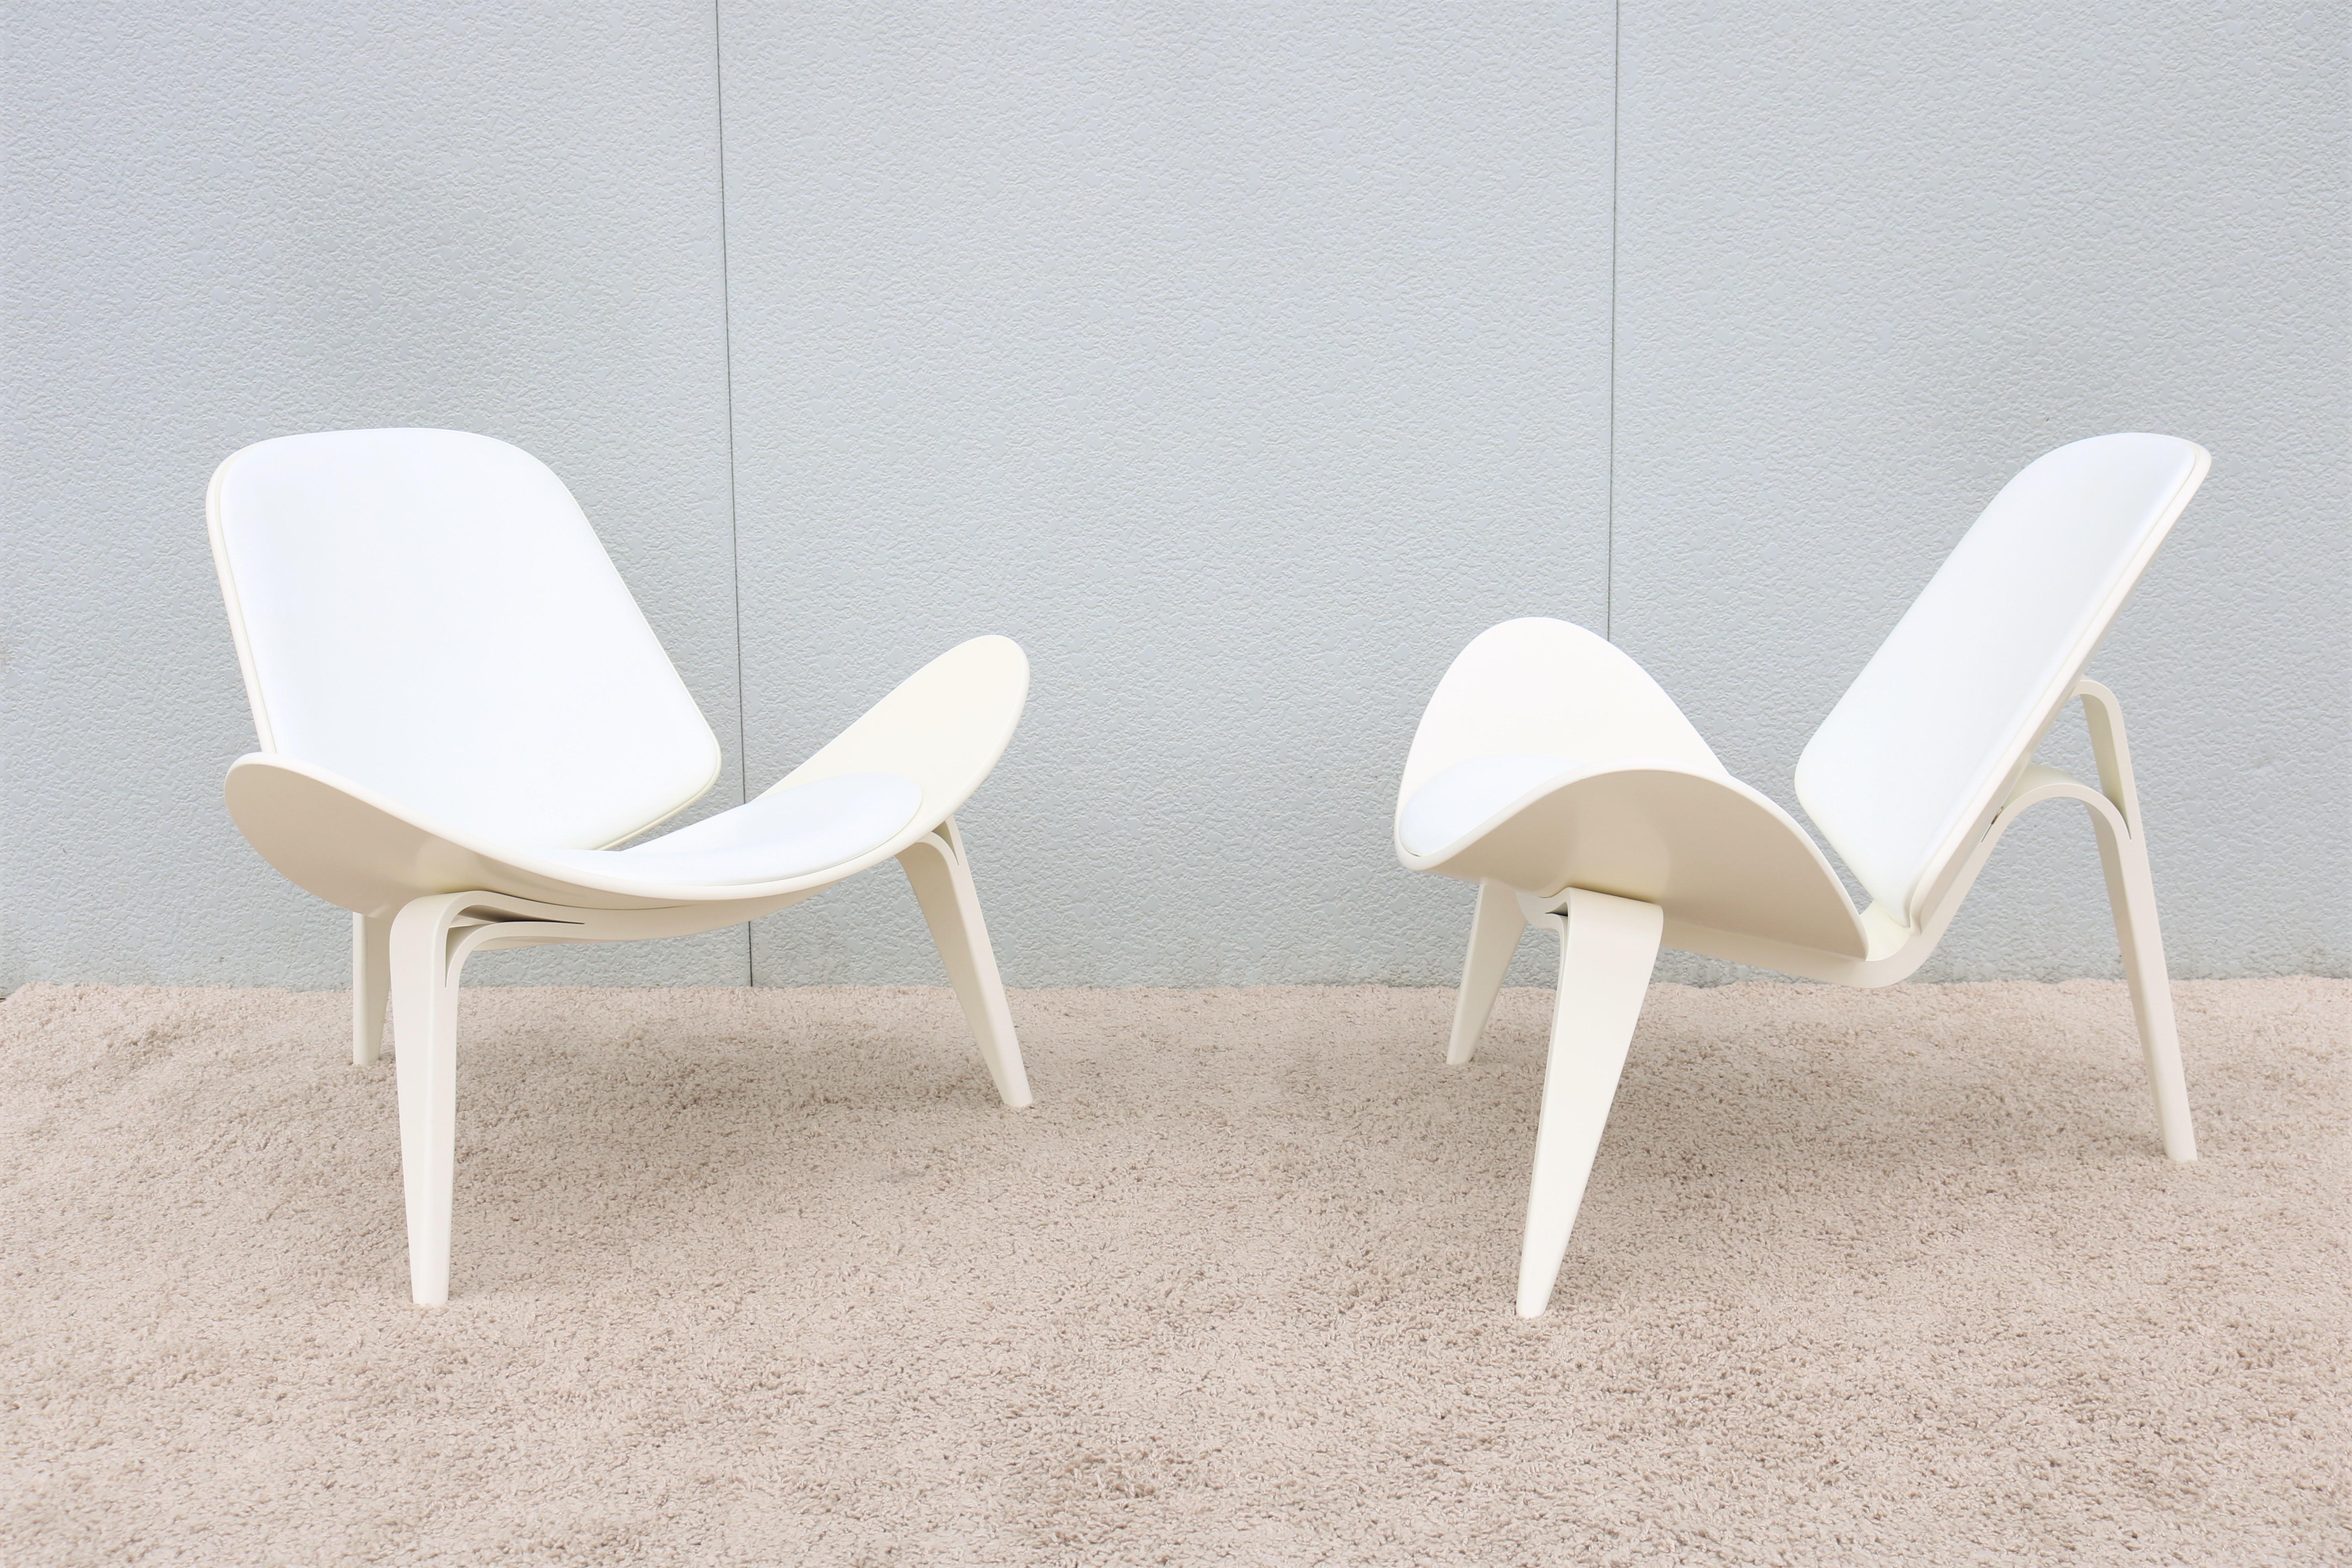 Laqué Paire de chaises coquillage CH07 de Hans J. Wegner pour Carl Hansen, de style danois moderne du milieu du siècle dernier en vente